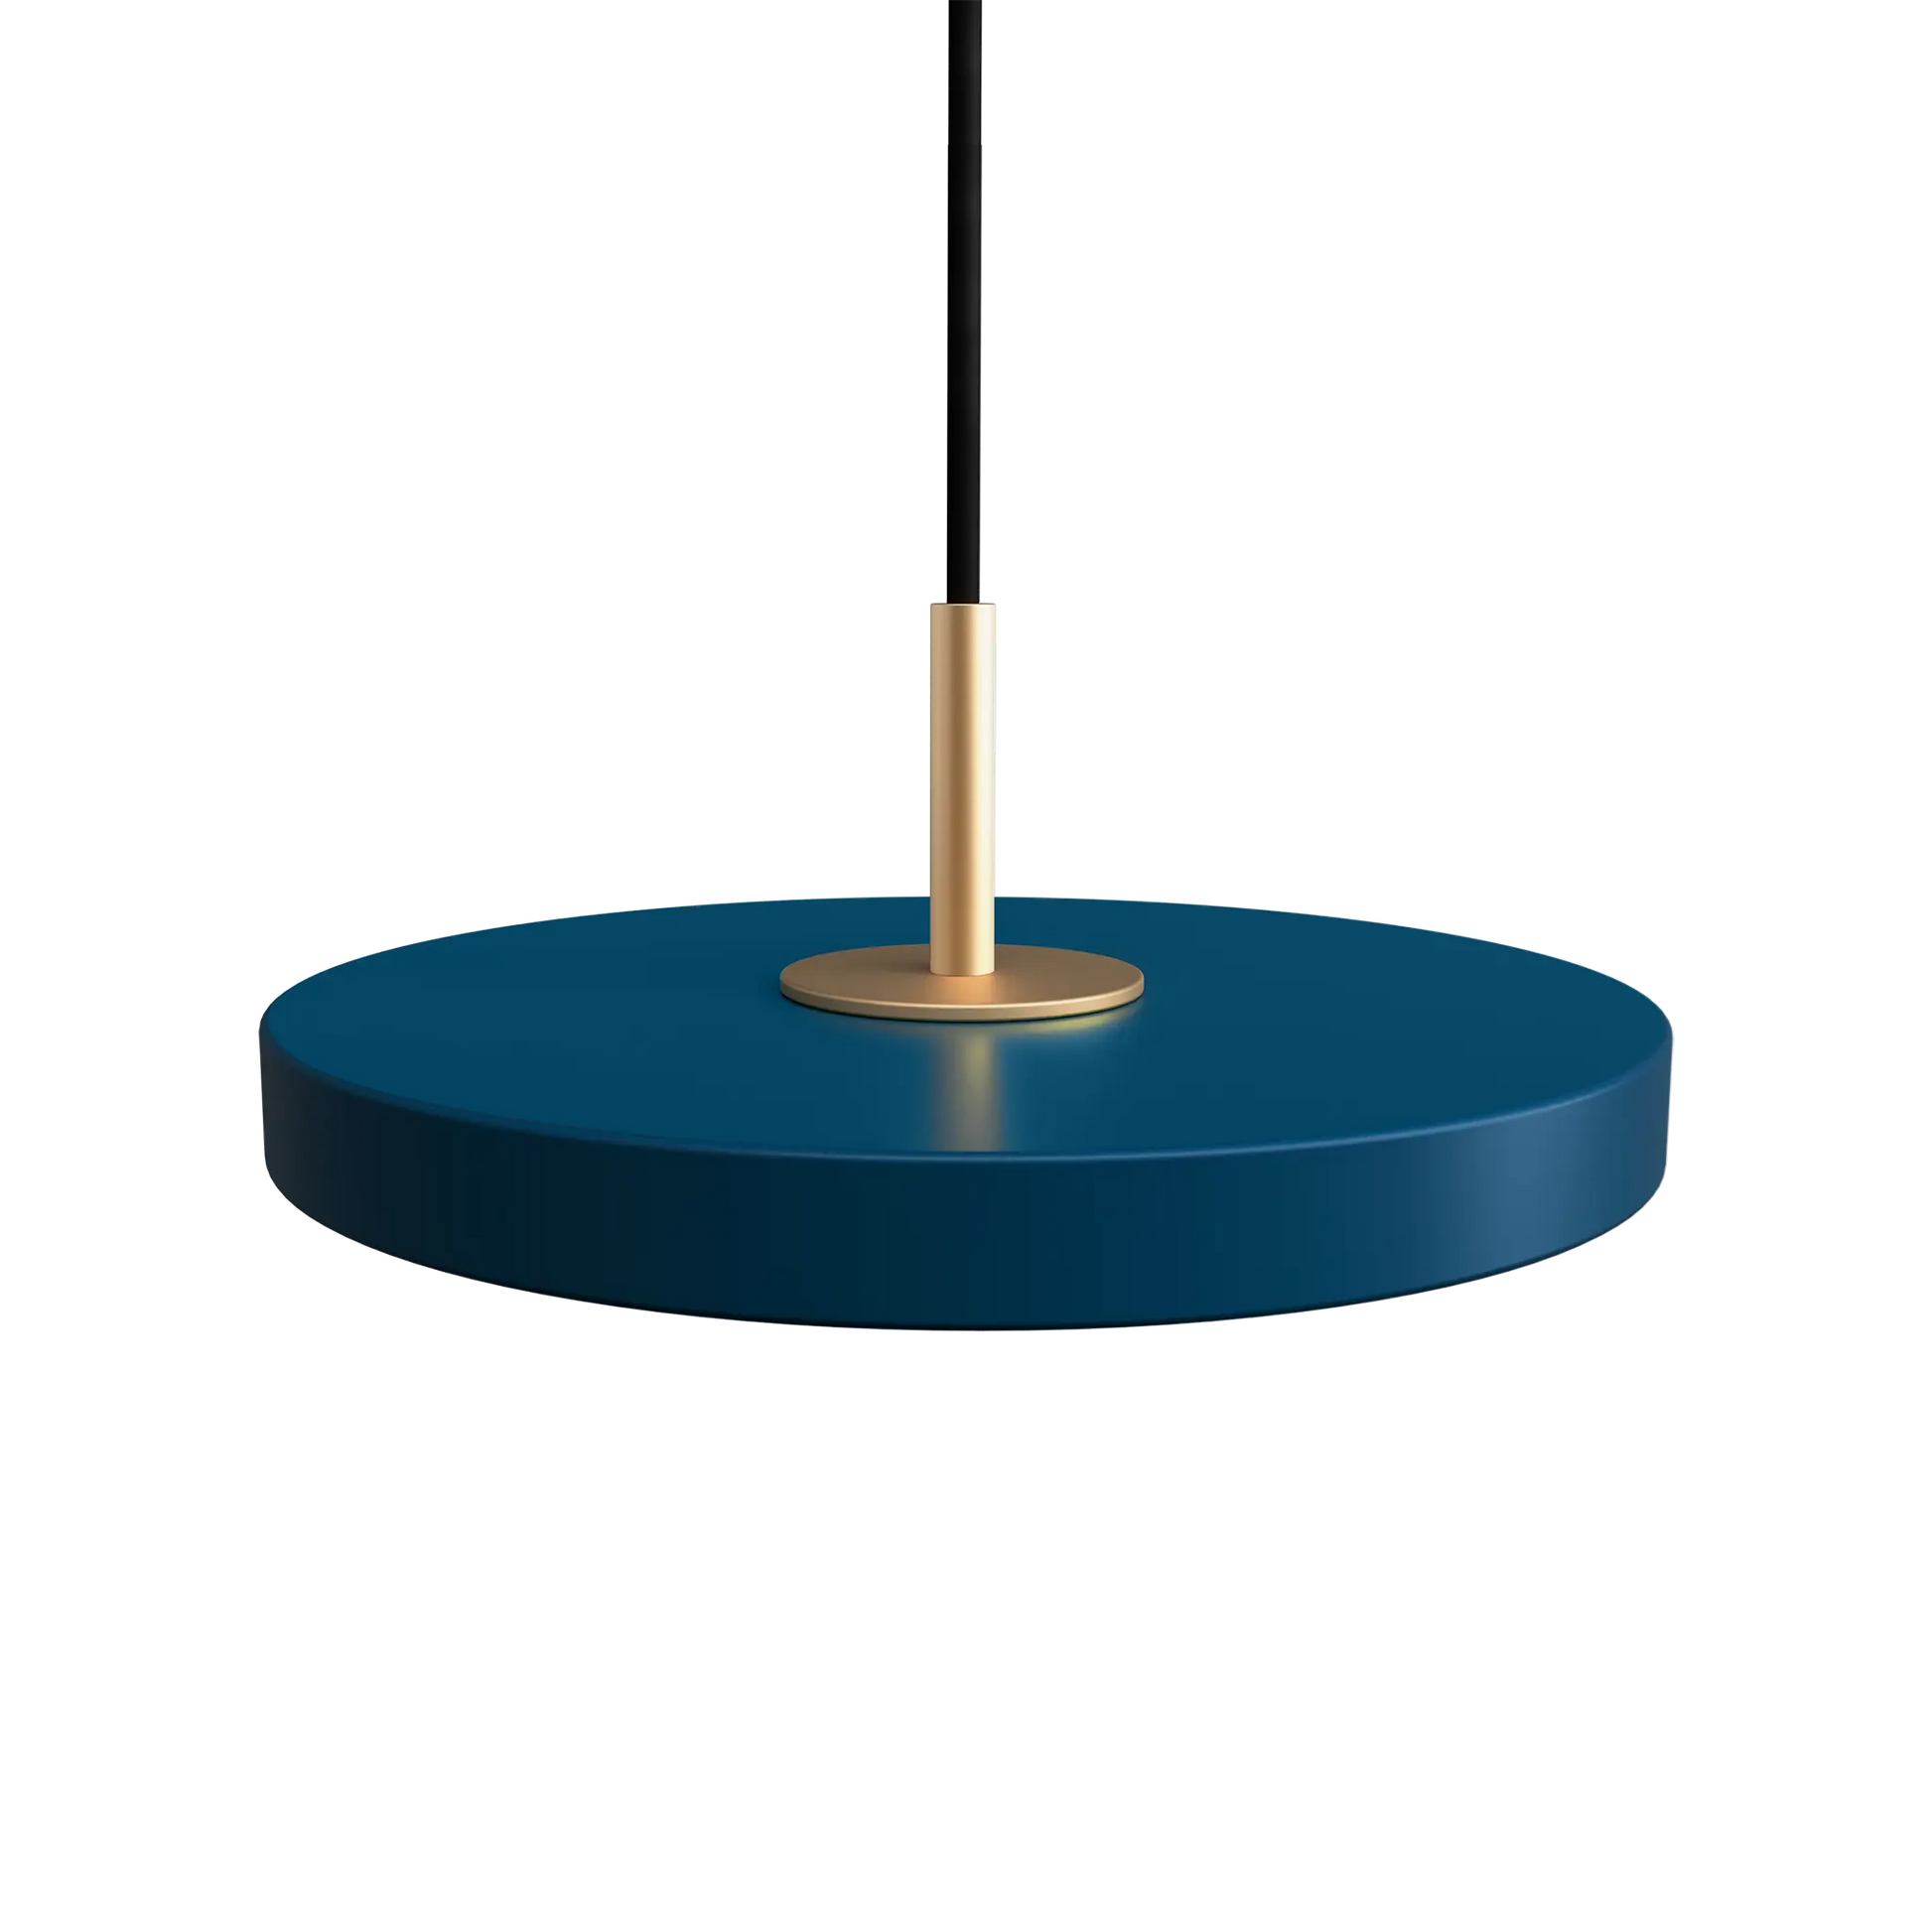 Taklampa Asteria Micro från Umage Petrol Blue med toppdel i mässing